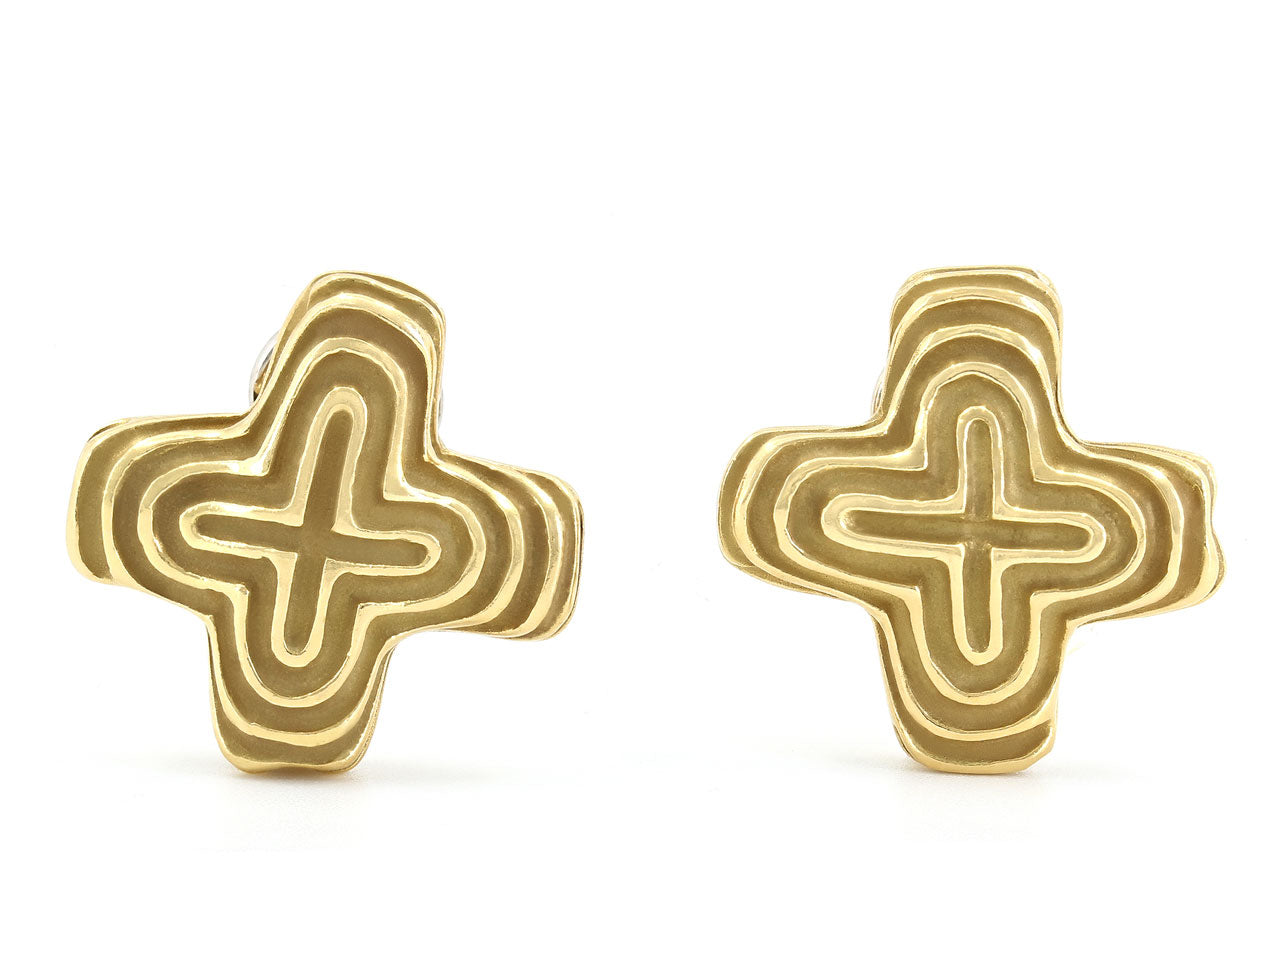 Christopher Walling 'X' Earrings in 18K Gold